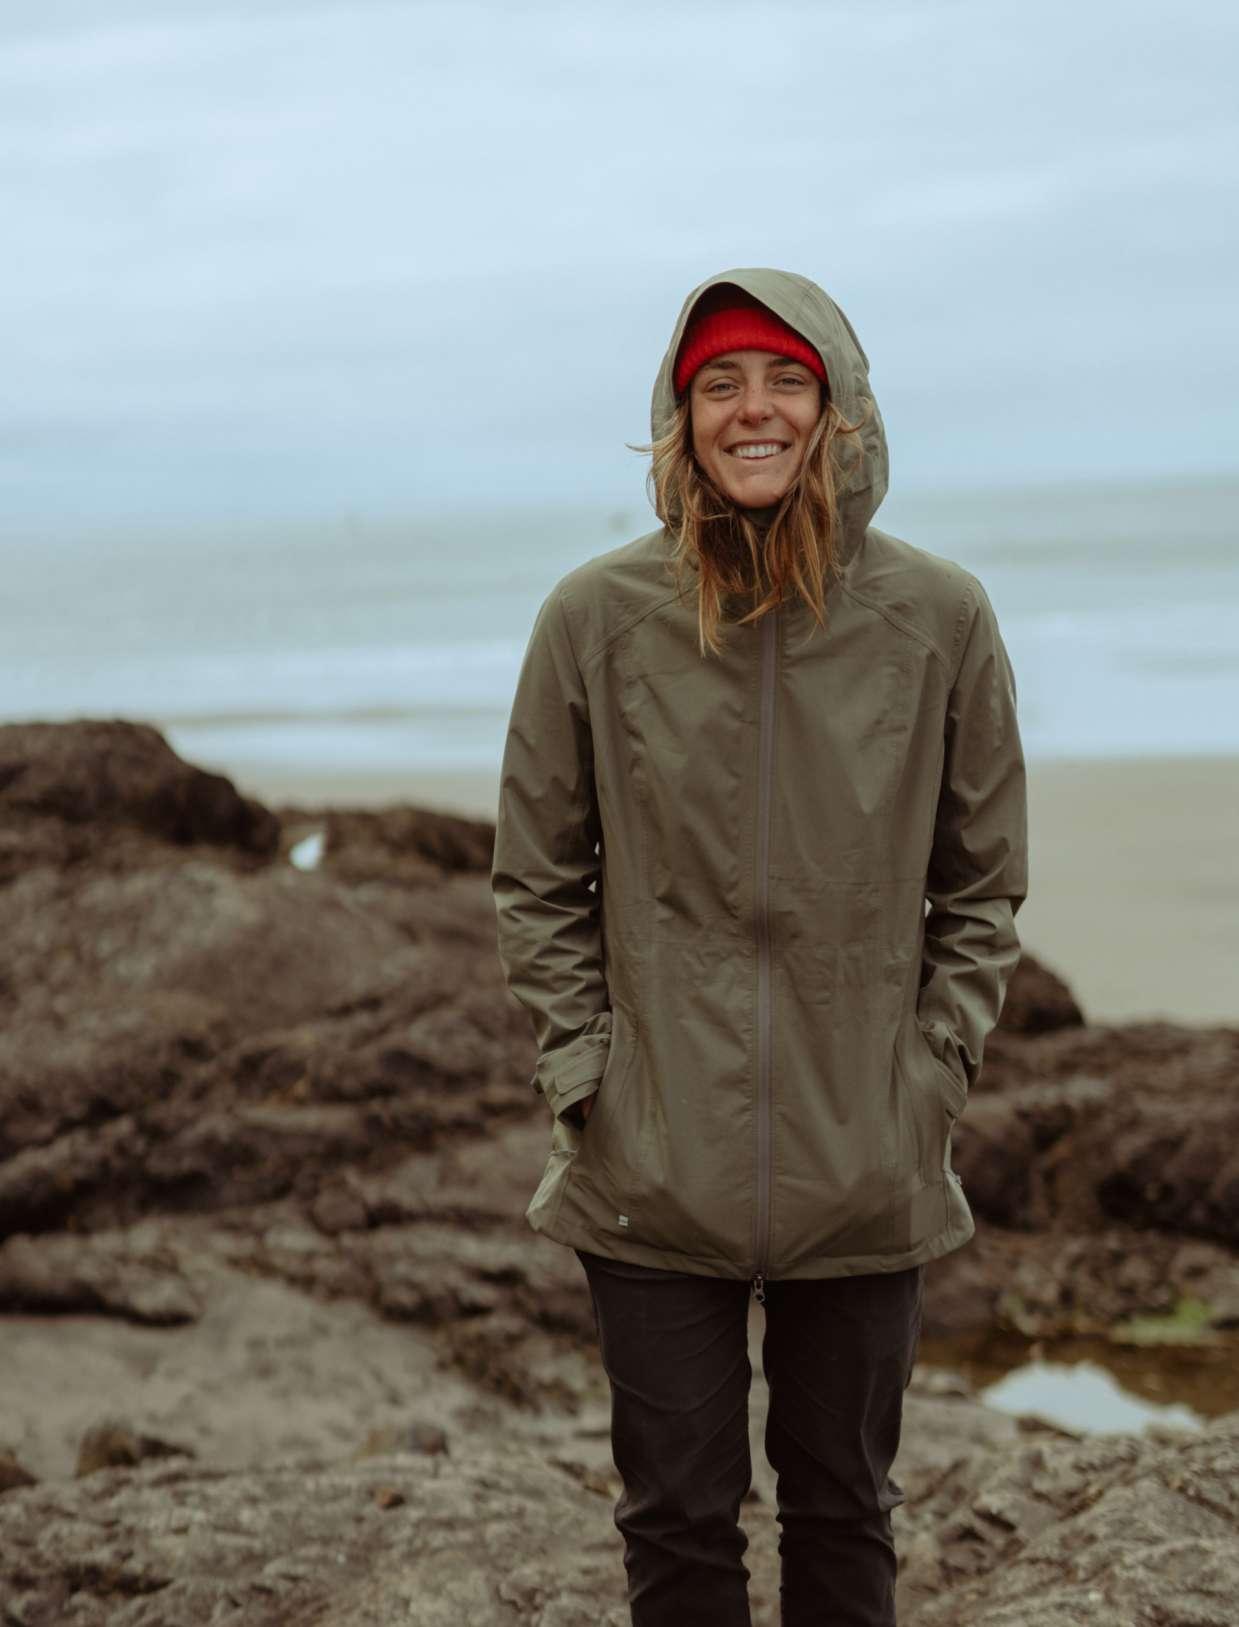 A girl in a KÜHL rain jacket on the beach